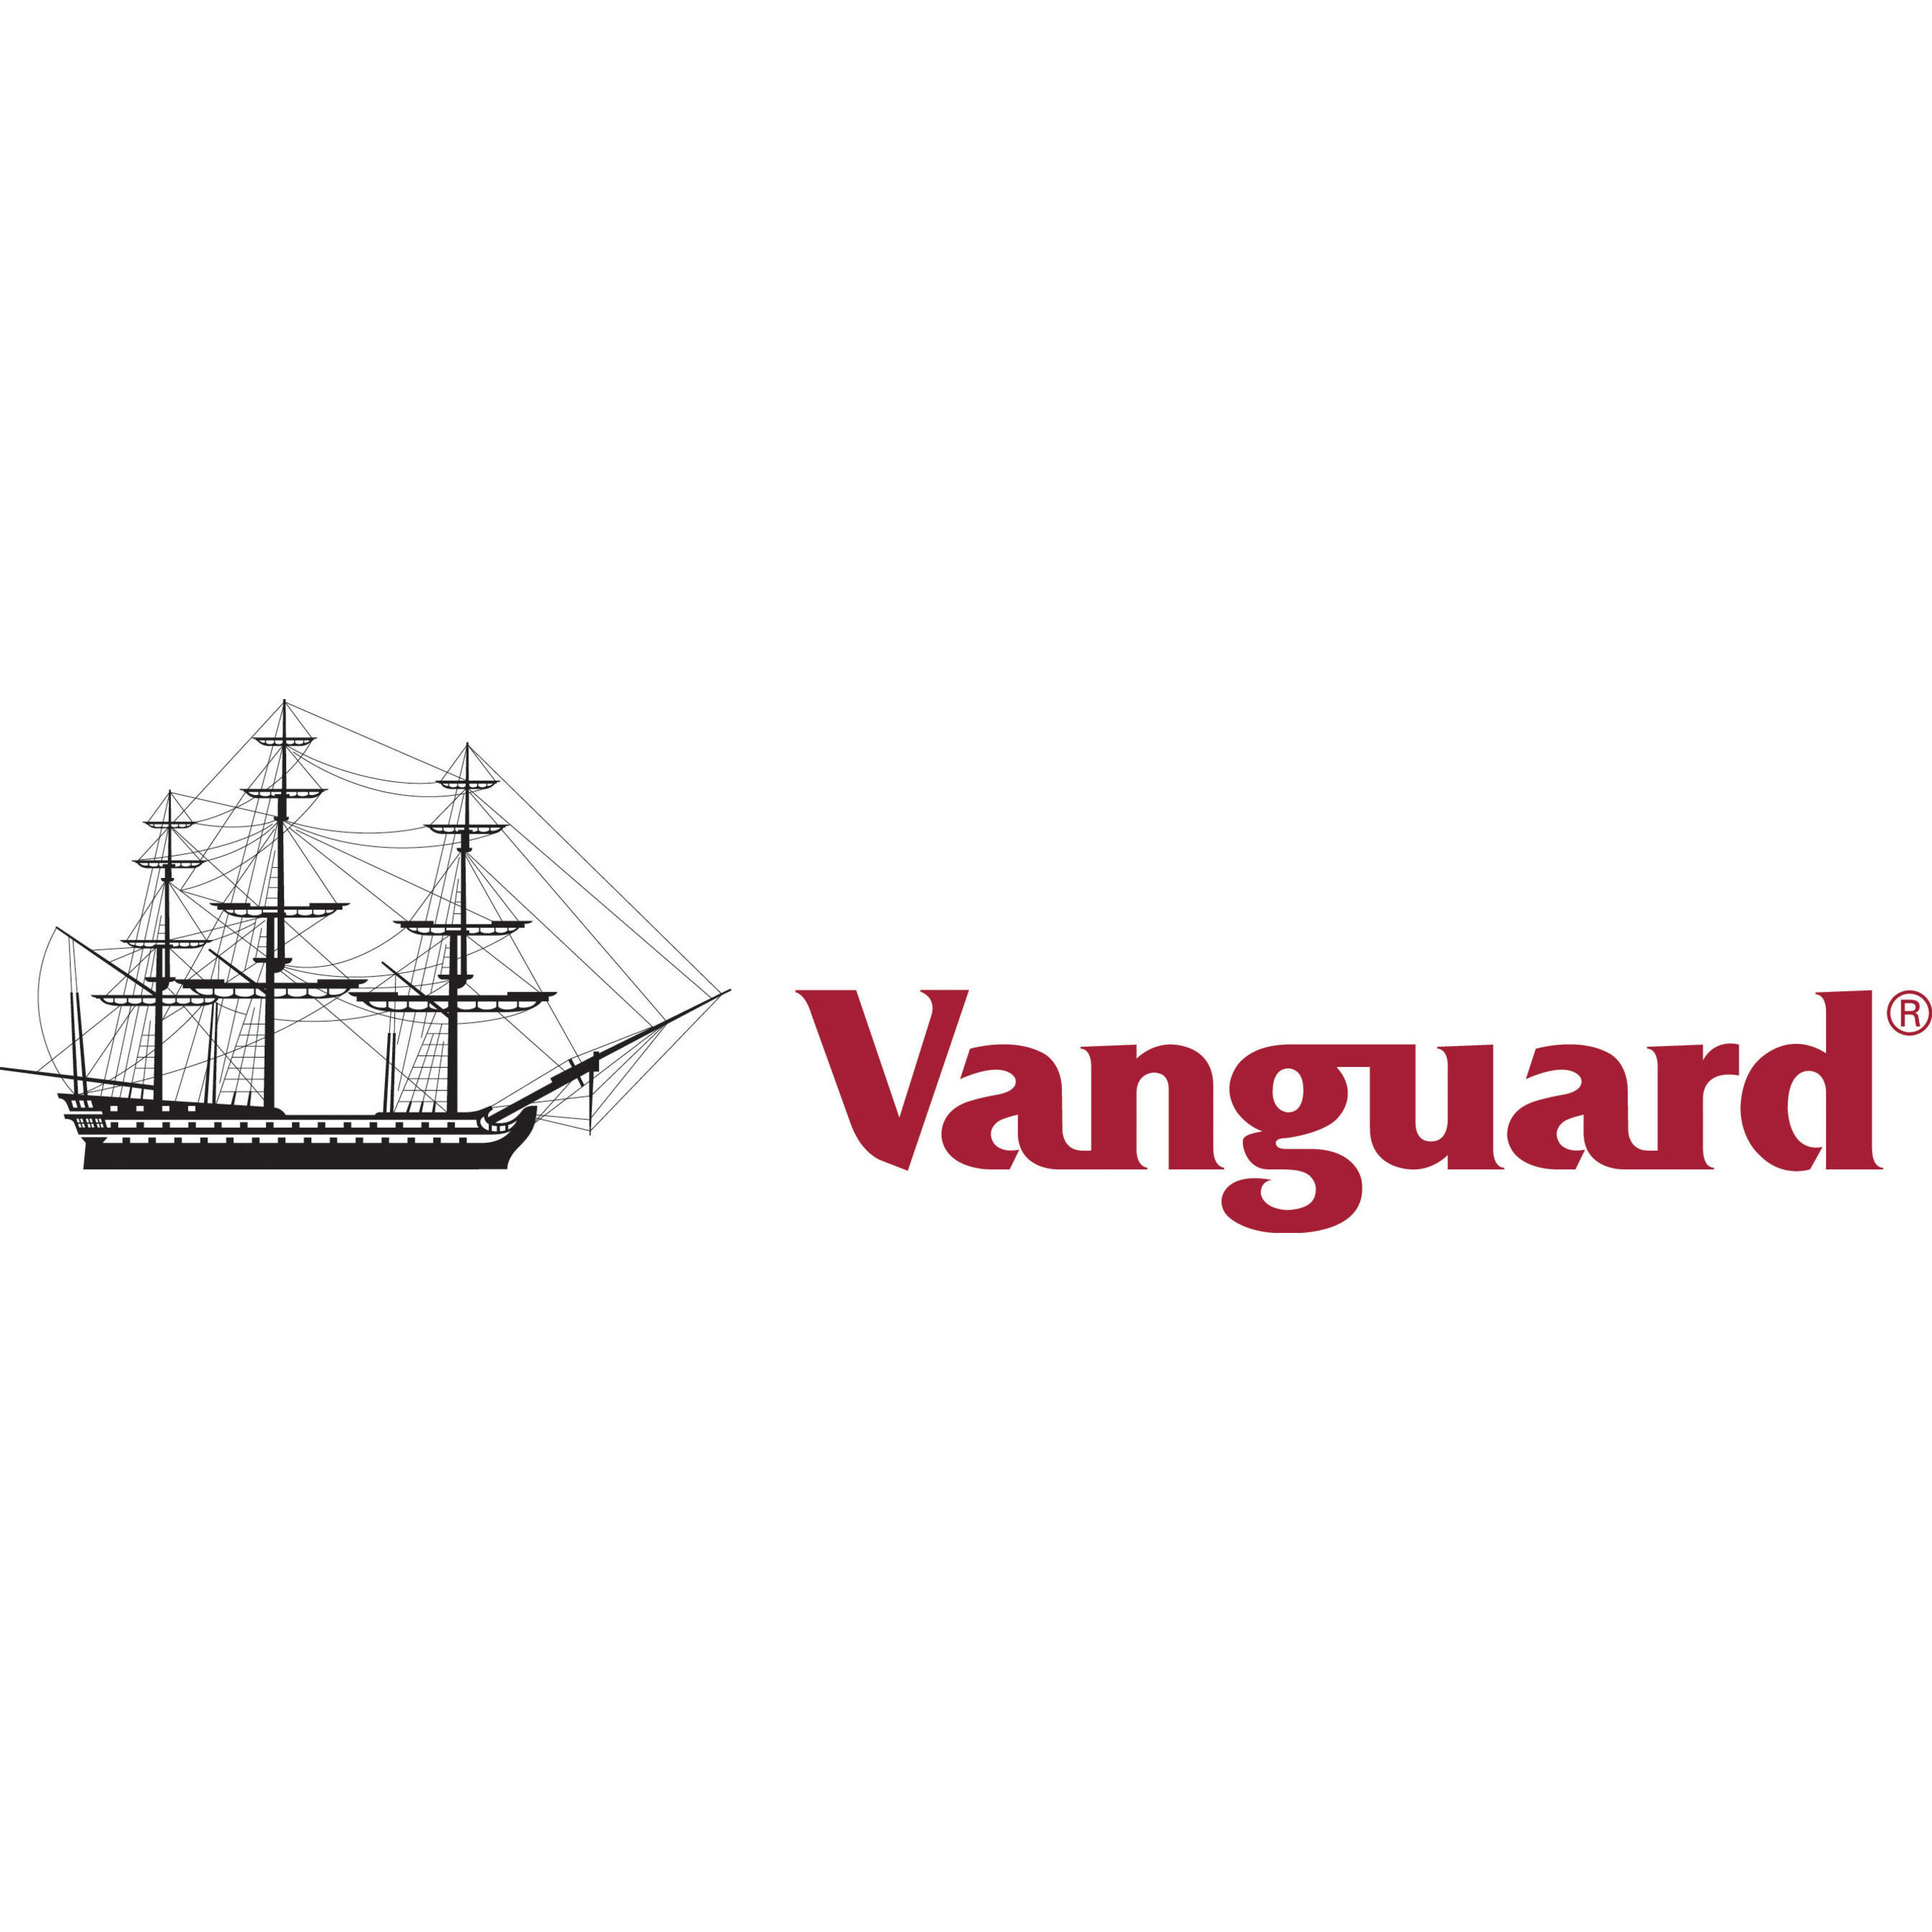 vanguard investing